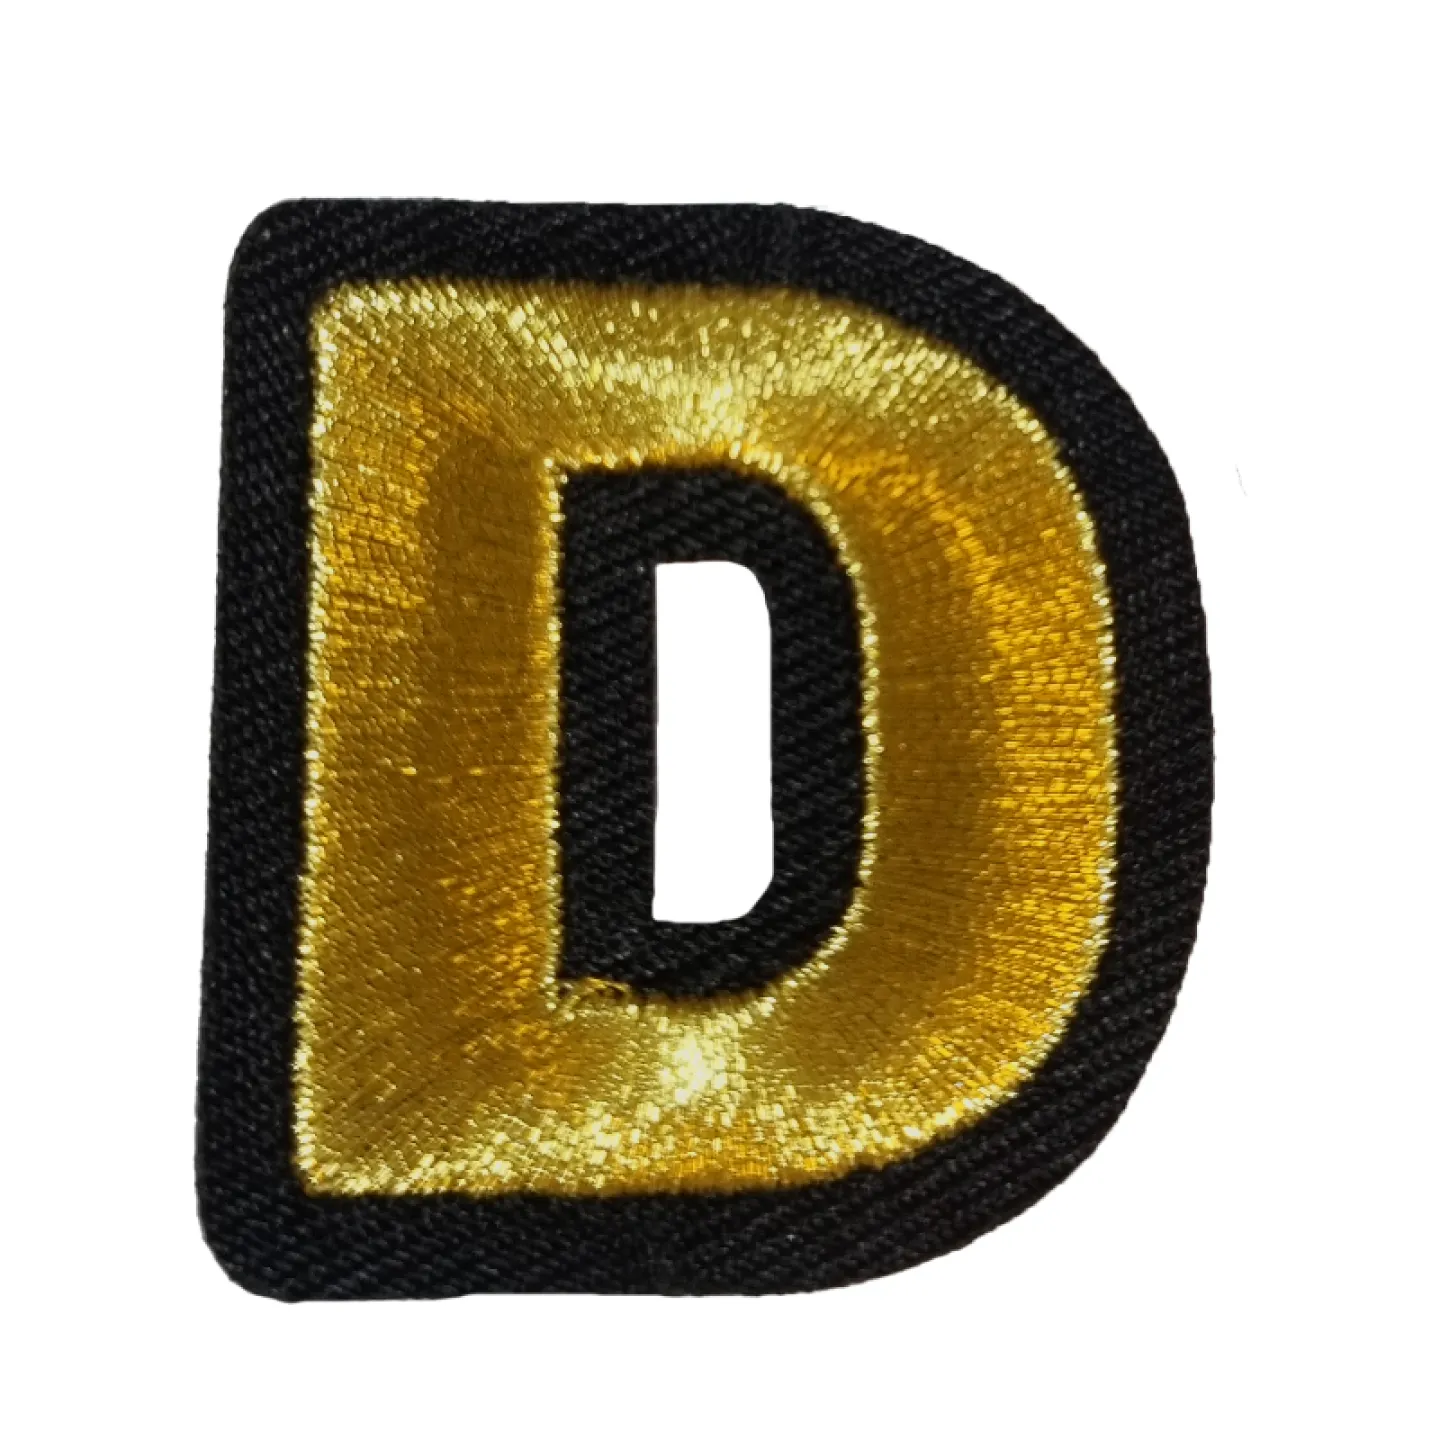 Oeteldonk embleem Gouden letter D.